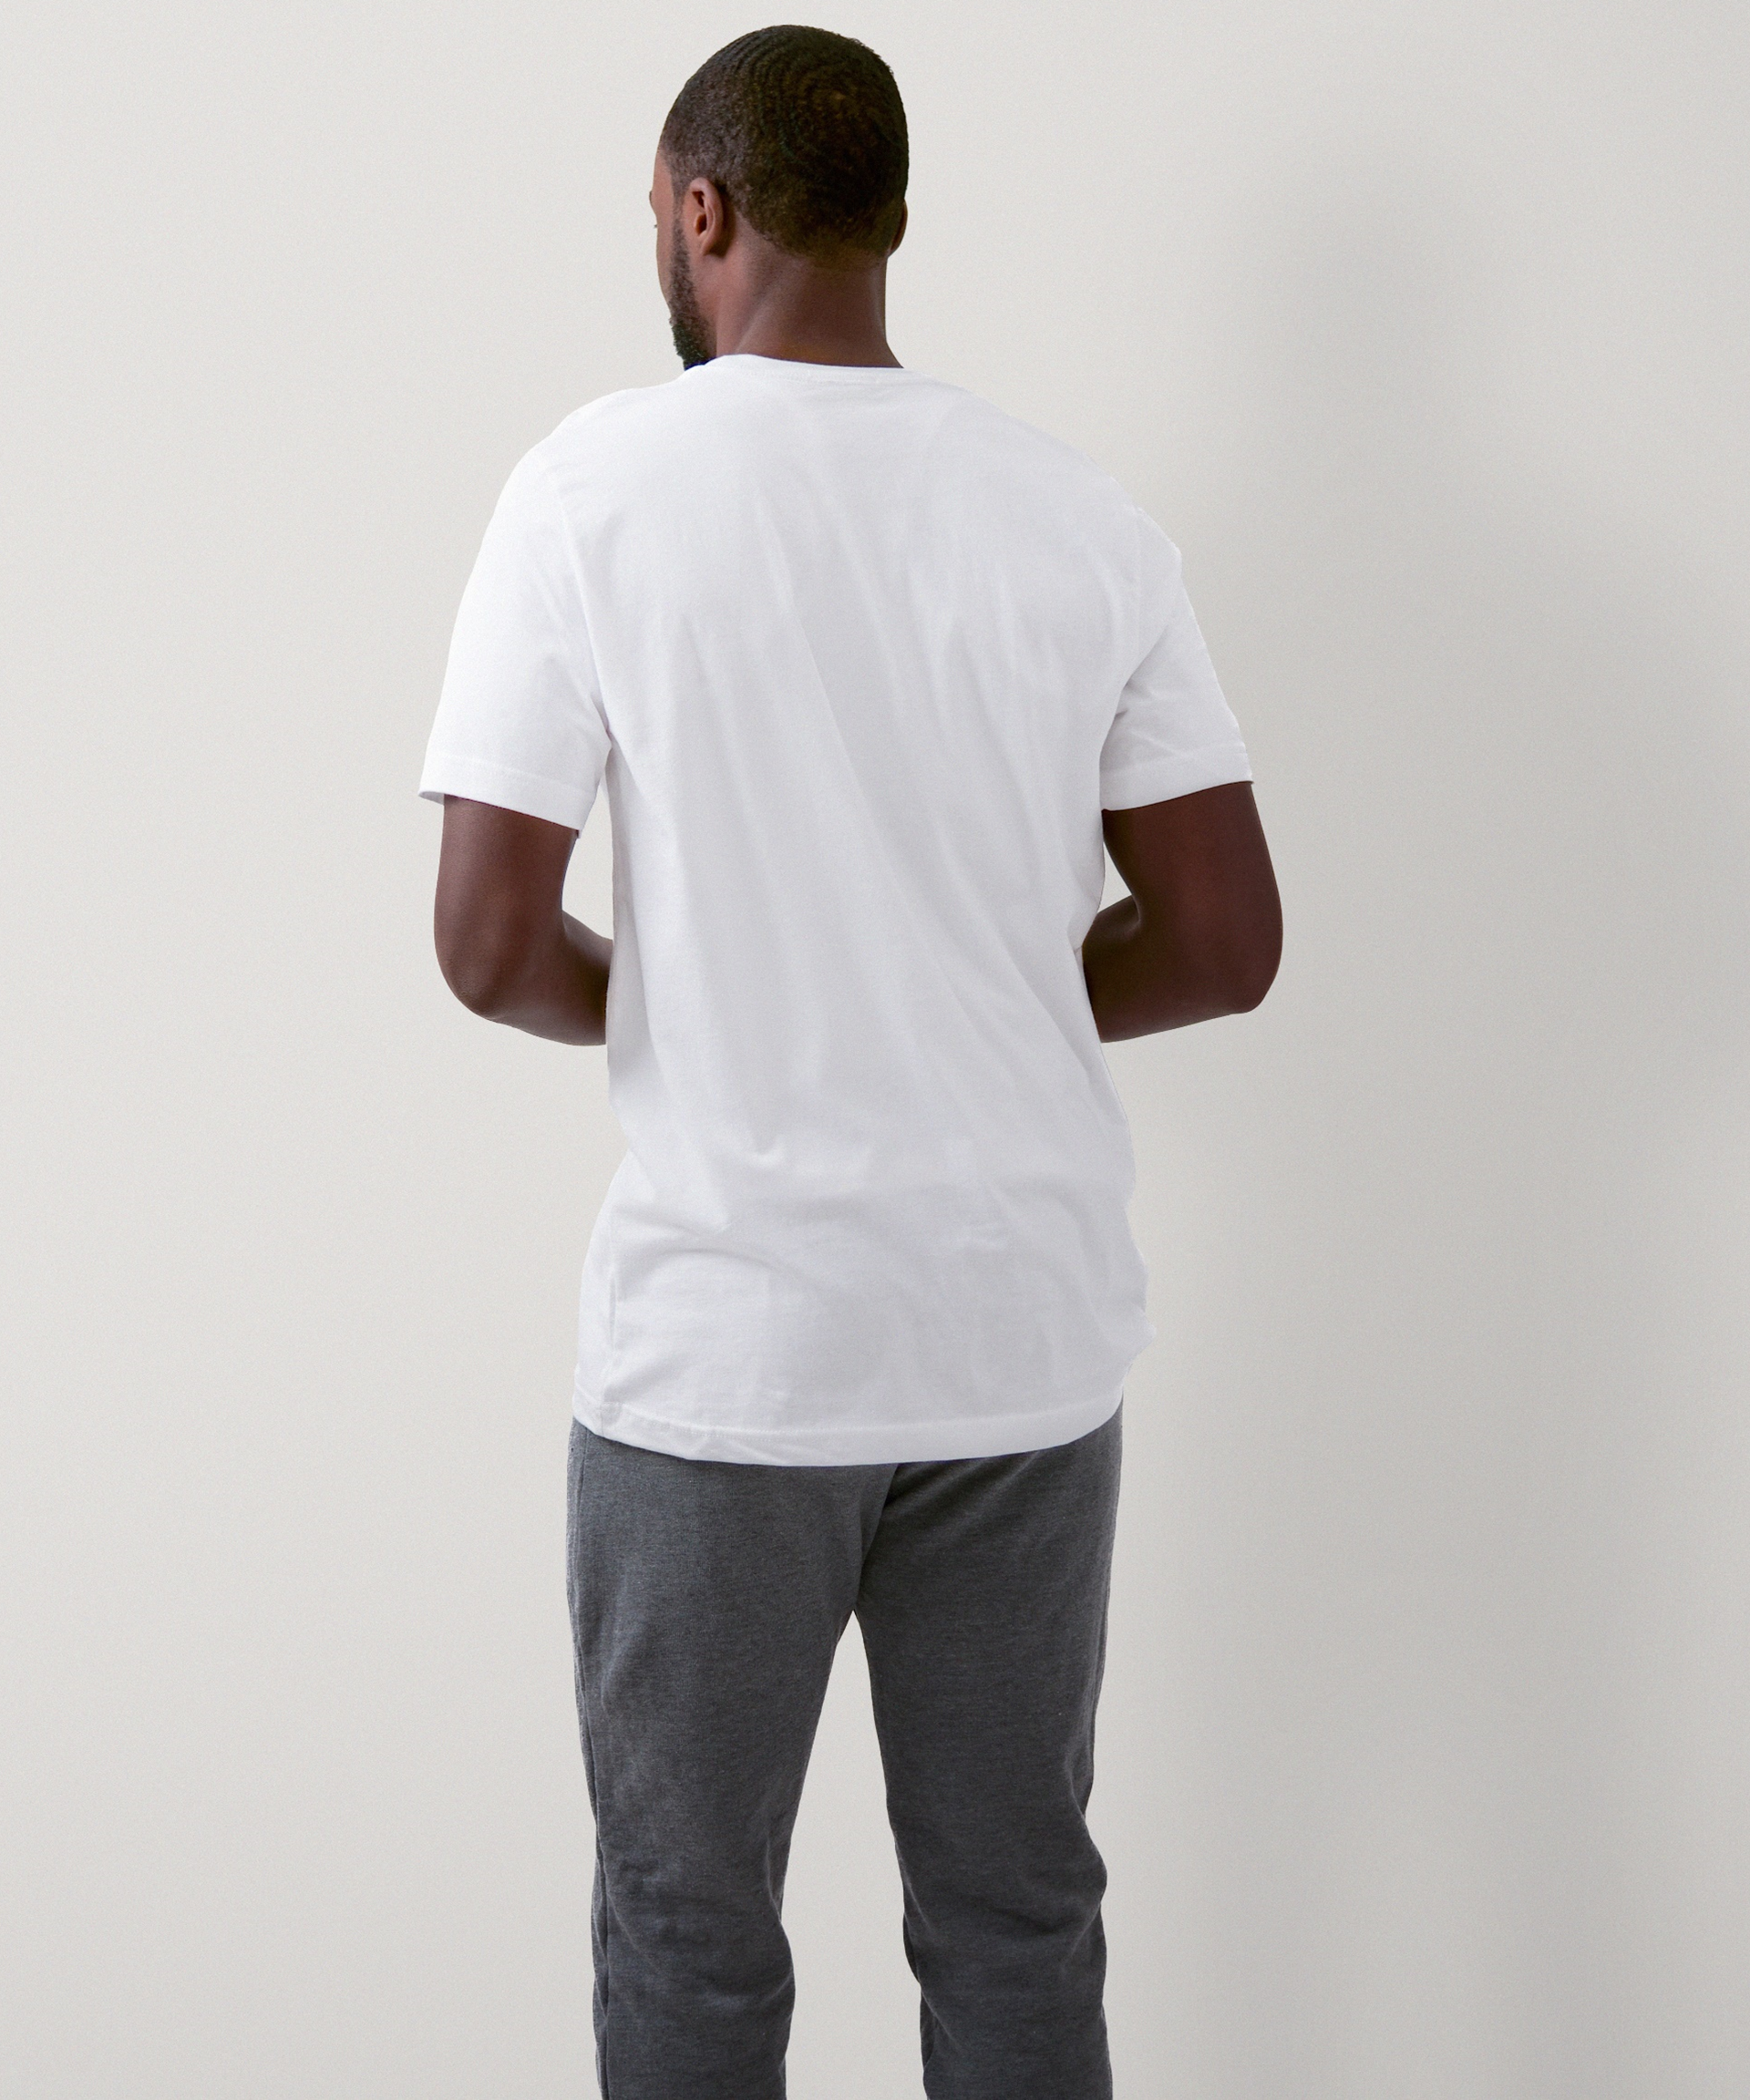 Signature Short Sleeve T-Shirt for Men (White)